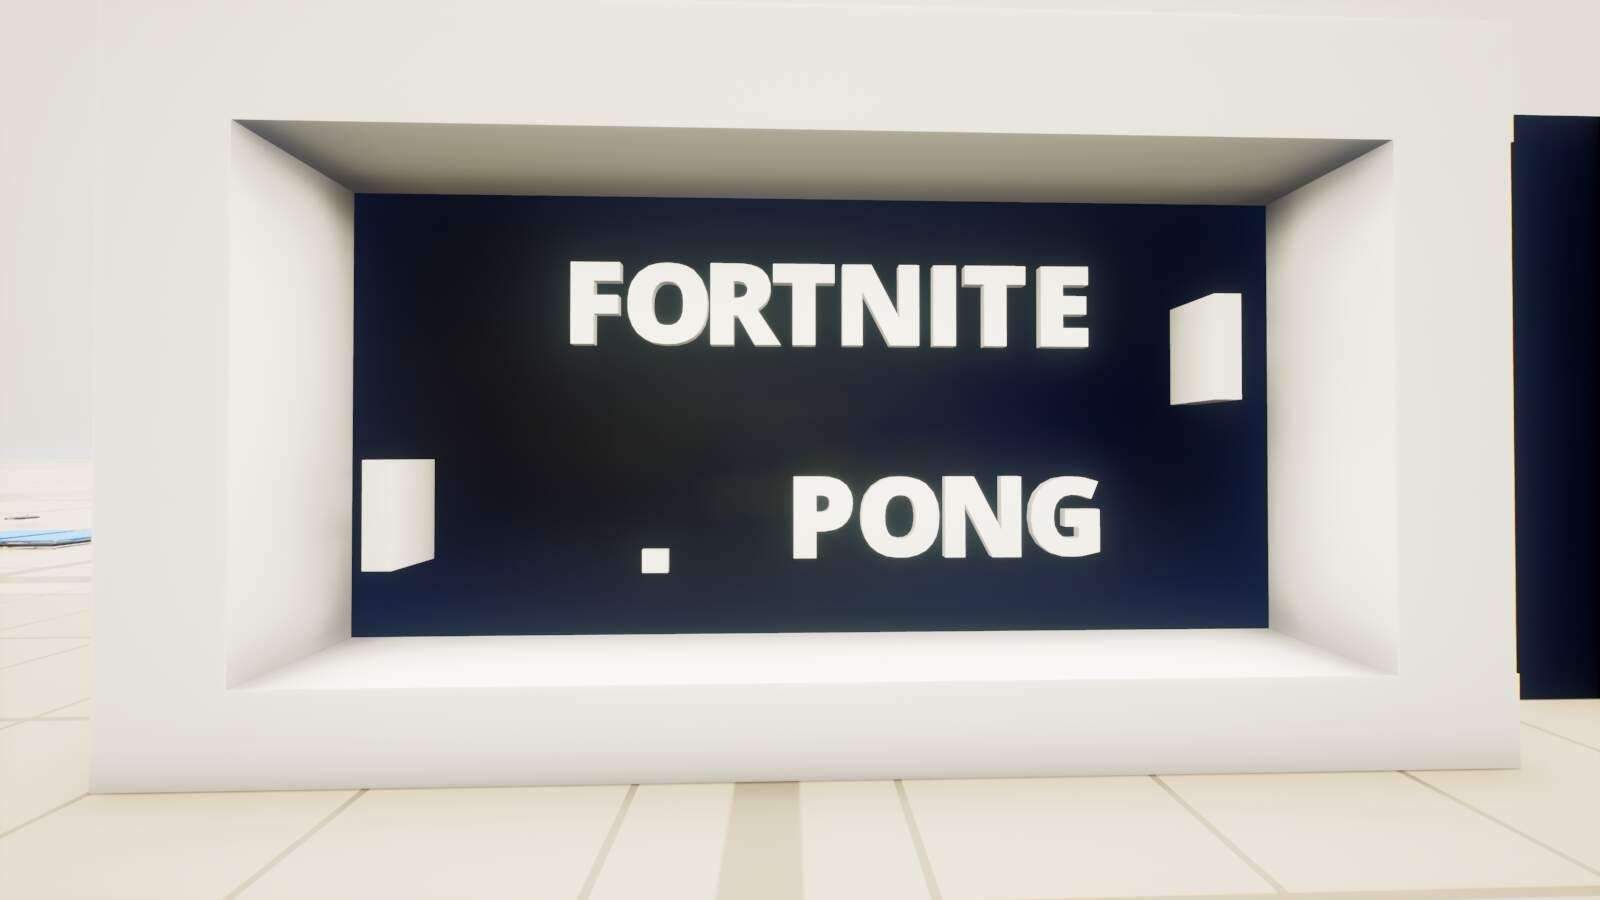 Fortnite Pong